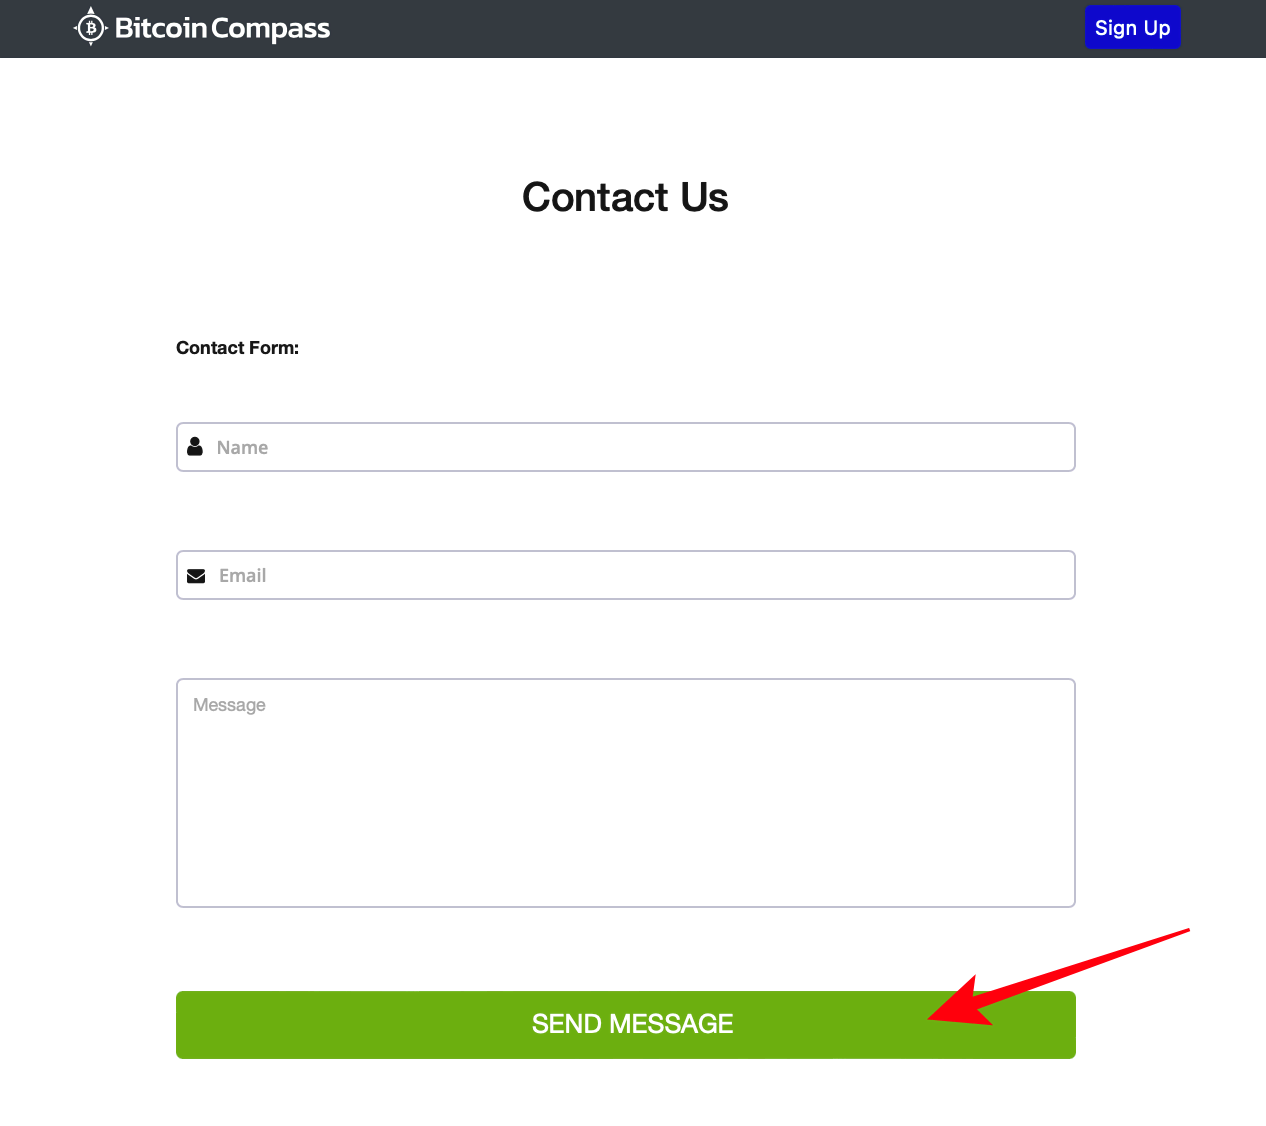 Bitcoin Compassのカスタマーサポートへの連絡方法